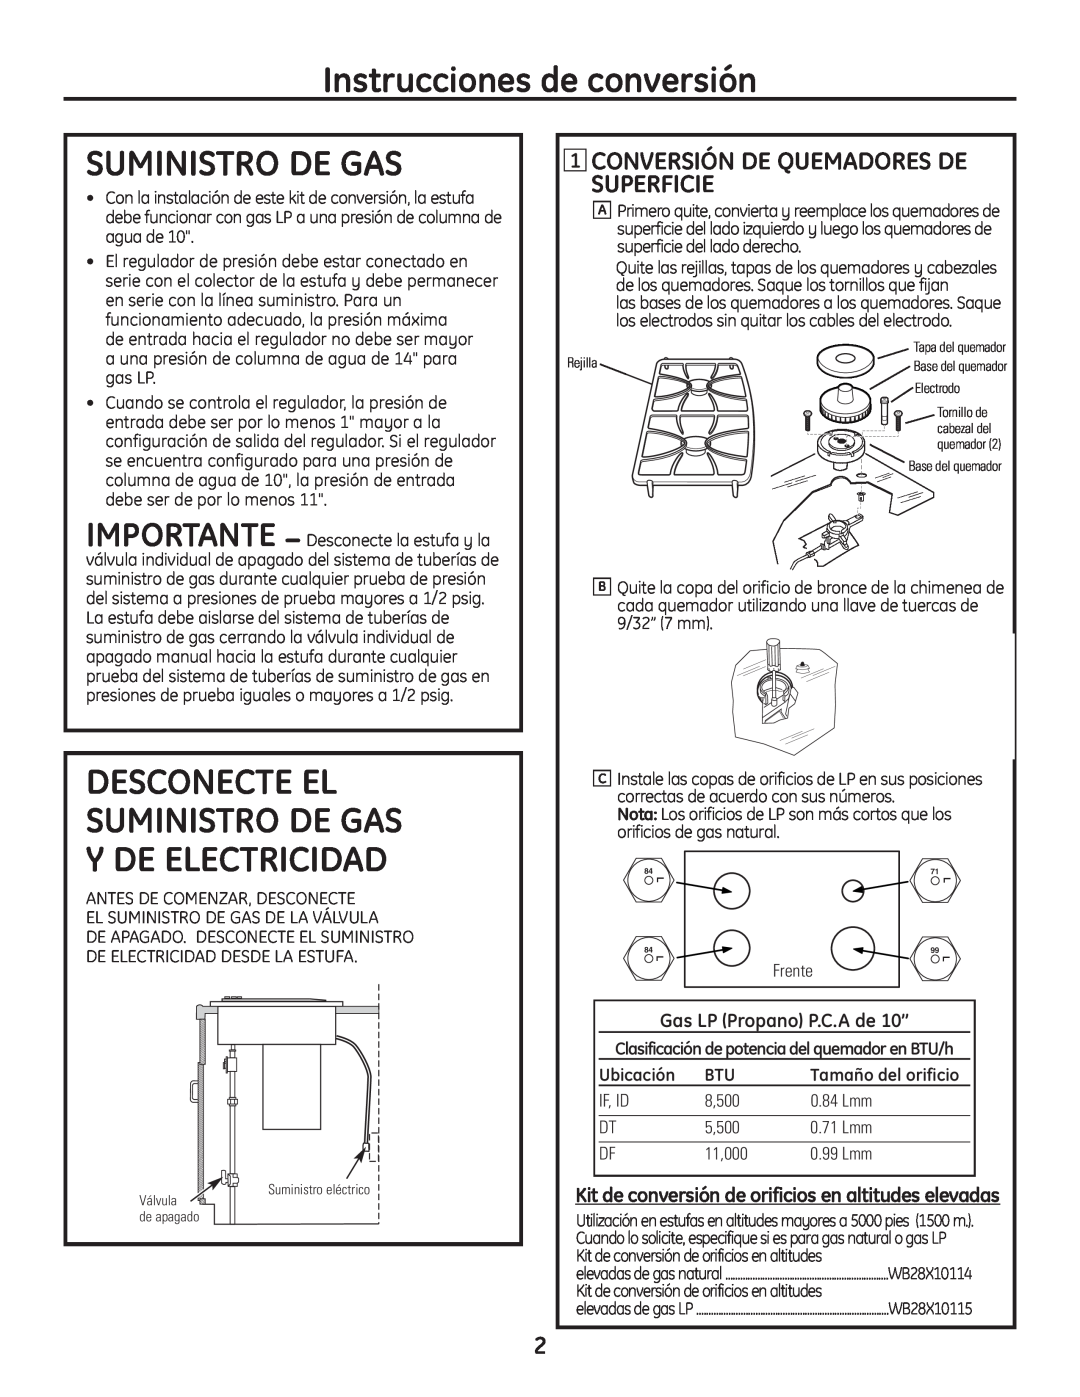 GE PGP989 warranty Instrucciones de conversión, Suministro De Gas, Conversión De Quemadores De Superficie, Ubicación 